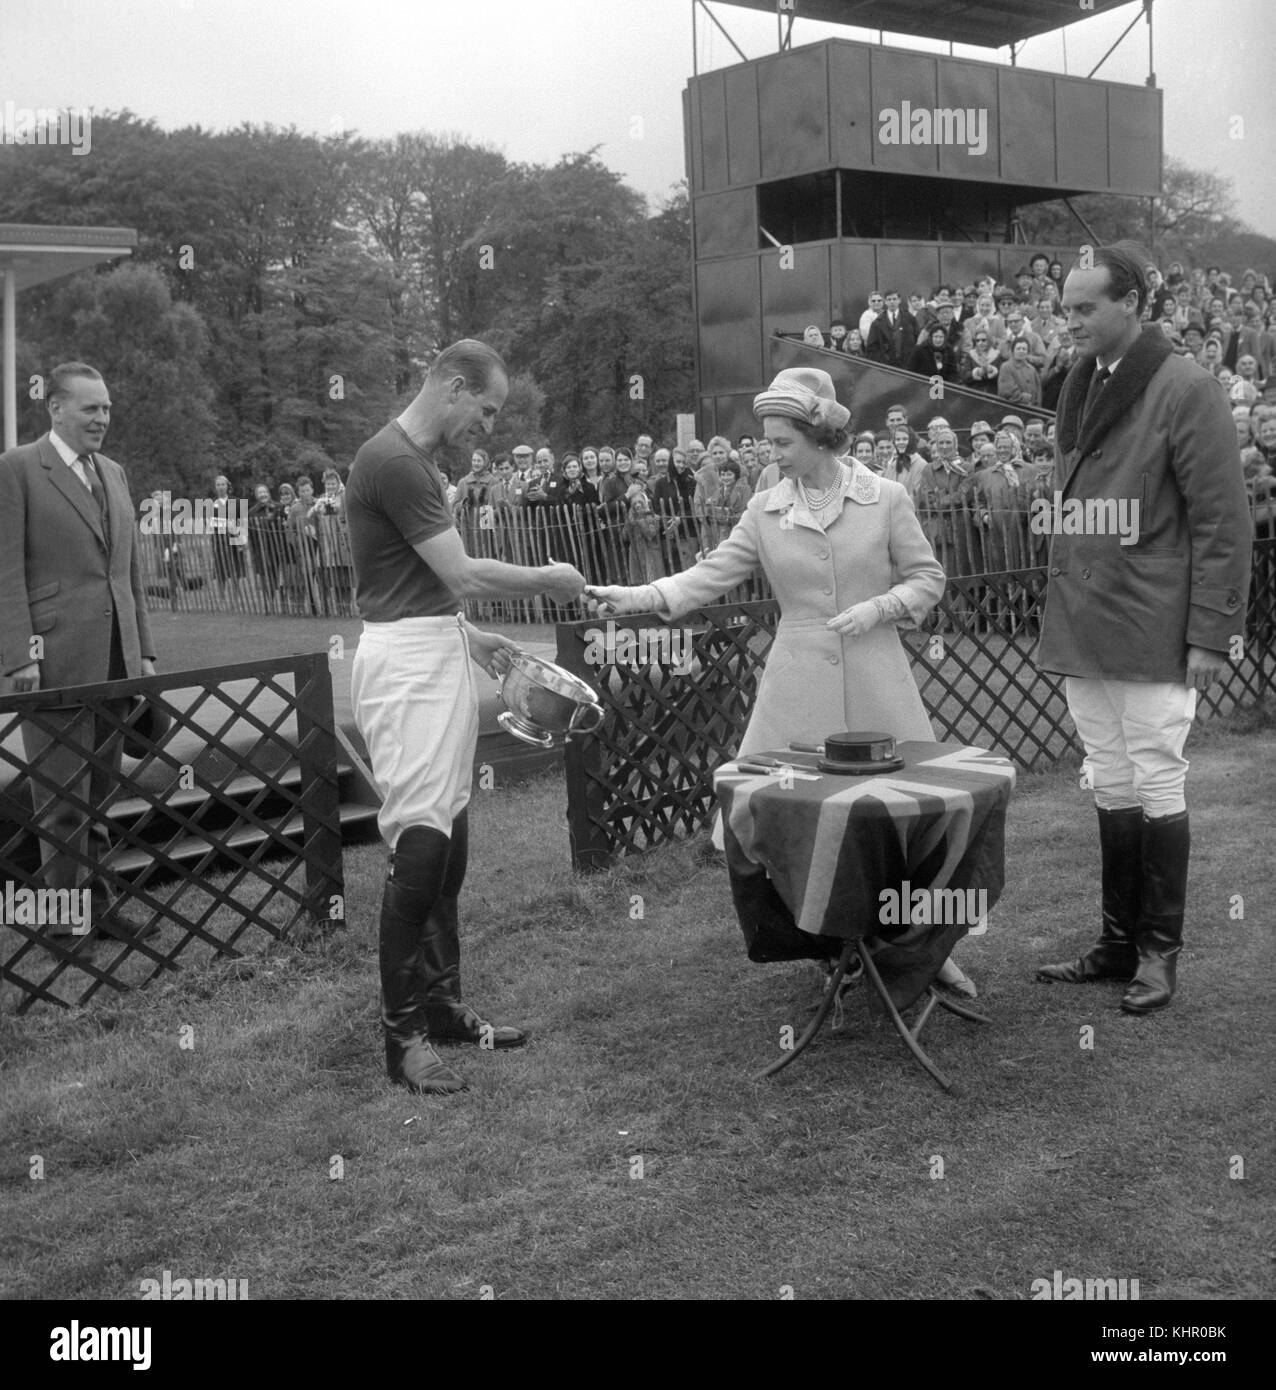 12/05/1963. La regina Elisabetta II presenta la Royal Windsor Horse Show Cup al Duca di Edimburgo che, in qualità di capitano del Windsor Park, aveva contribuito a sconfiggere Bucket Hill nella finale su Smith's Lawn, Windsor Great Park. La coppia reale festeggerà il suo anniversario di nozze di platino il 20 novembre. Foto Stock